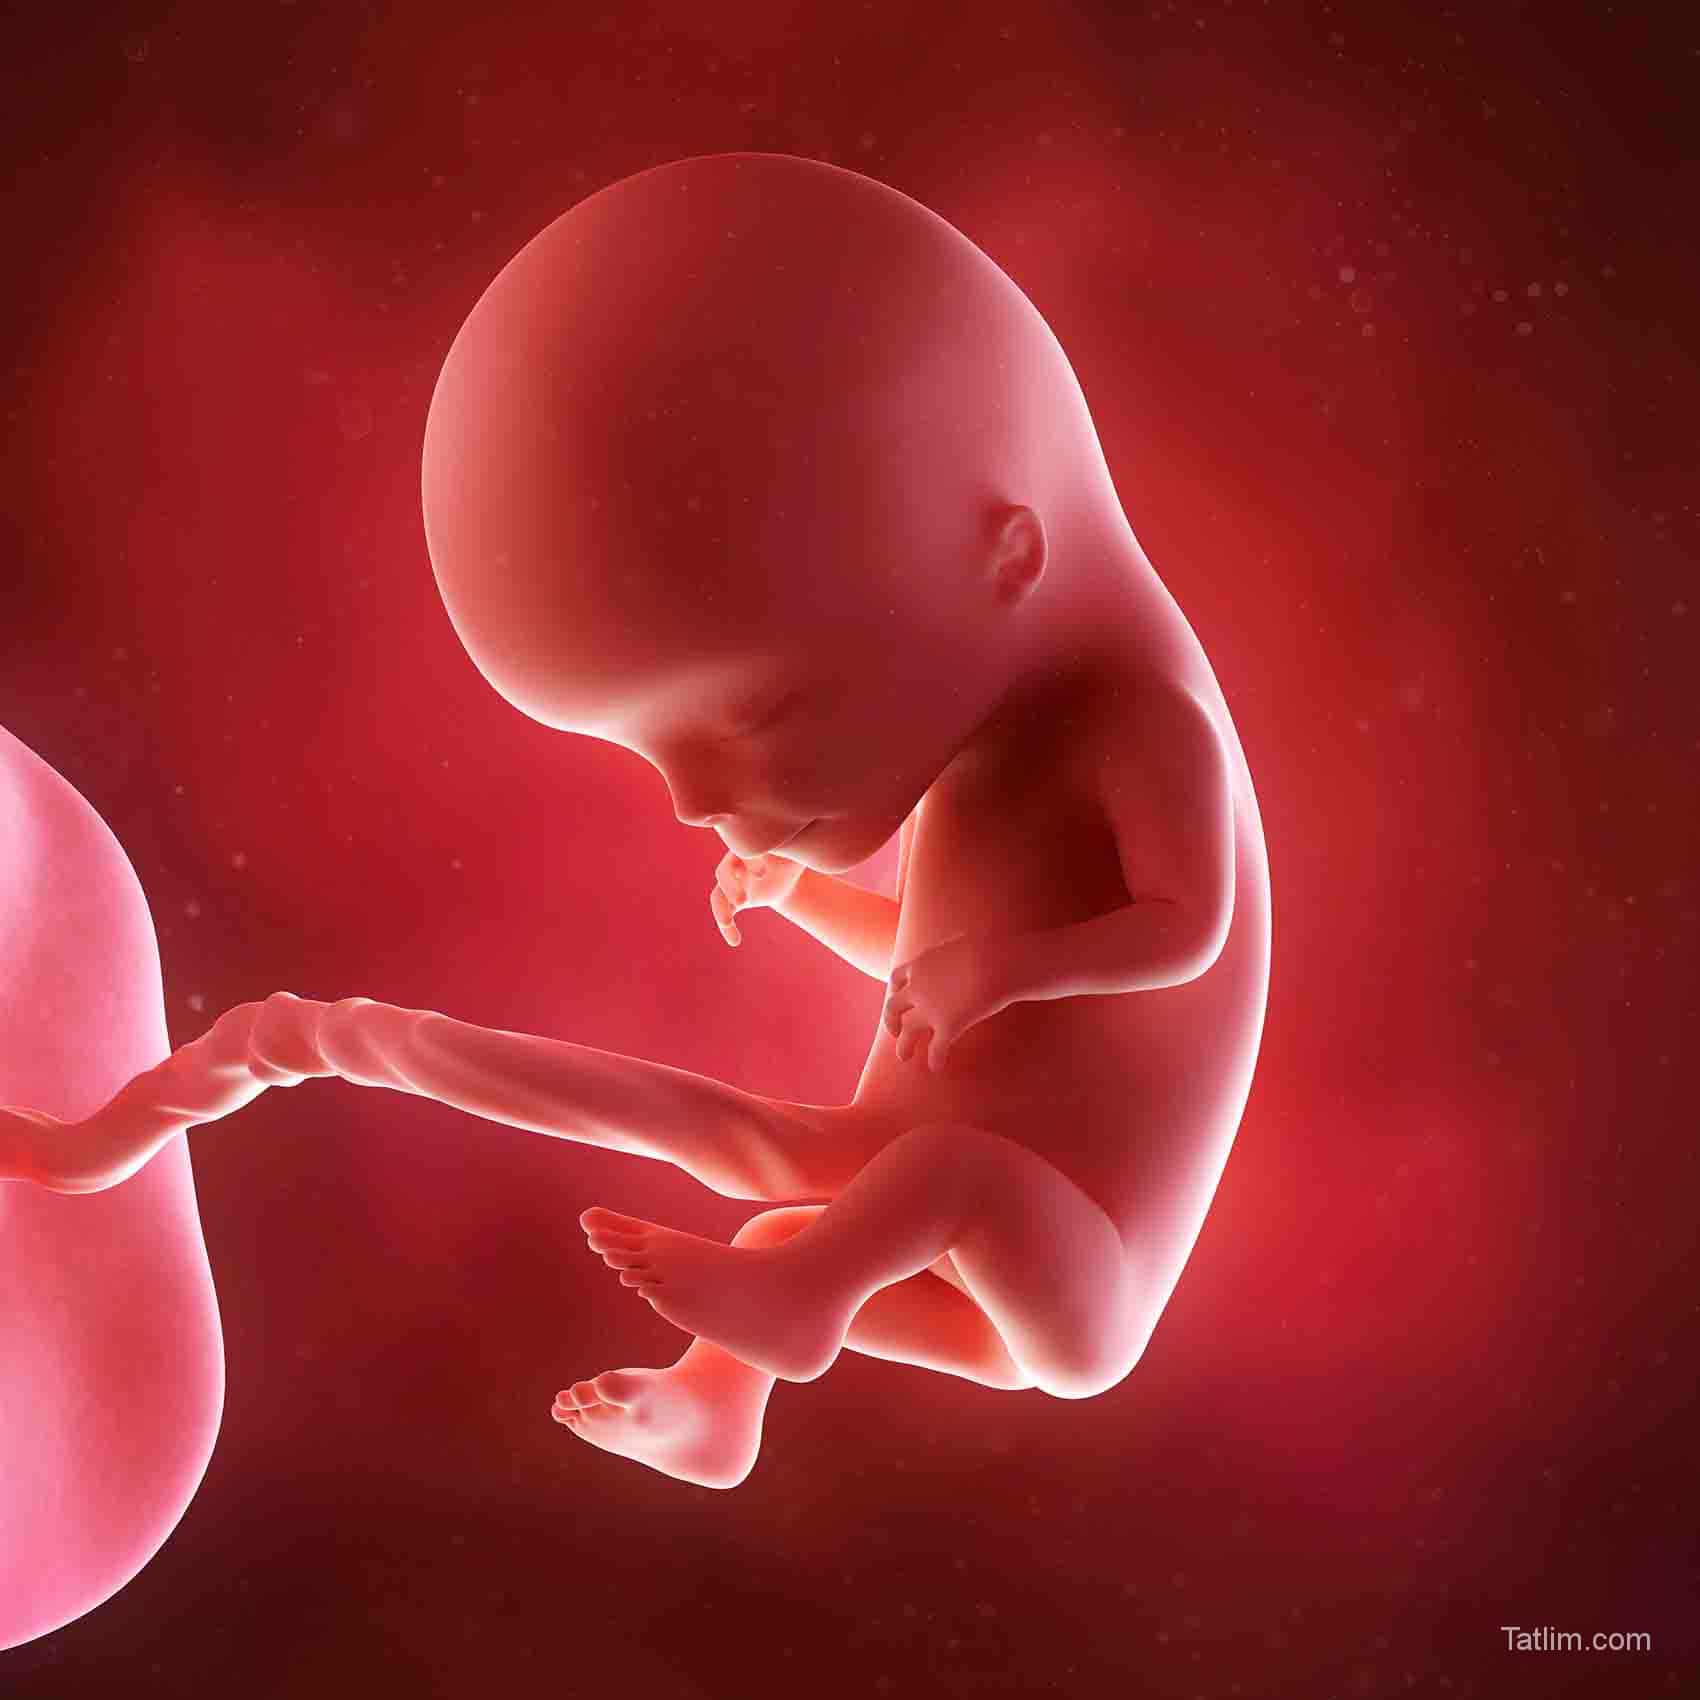 Плод 11 недель фото. Плод ребенка на 12 неделе беременности. Эмбрион на 12 неделе беременности. Плод на 11-12 неделе беременности.